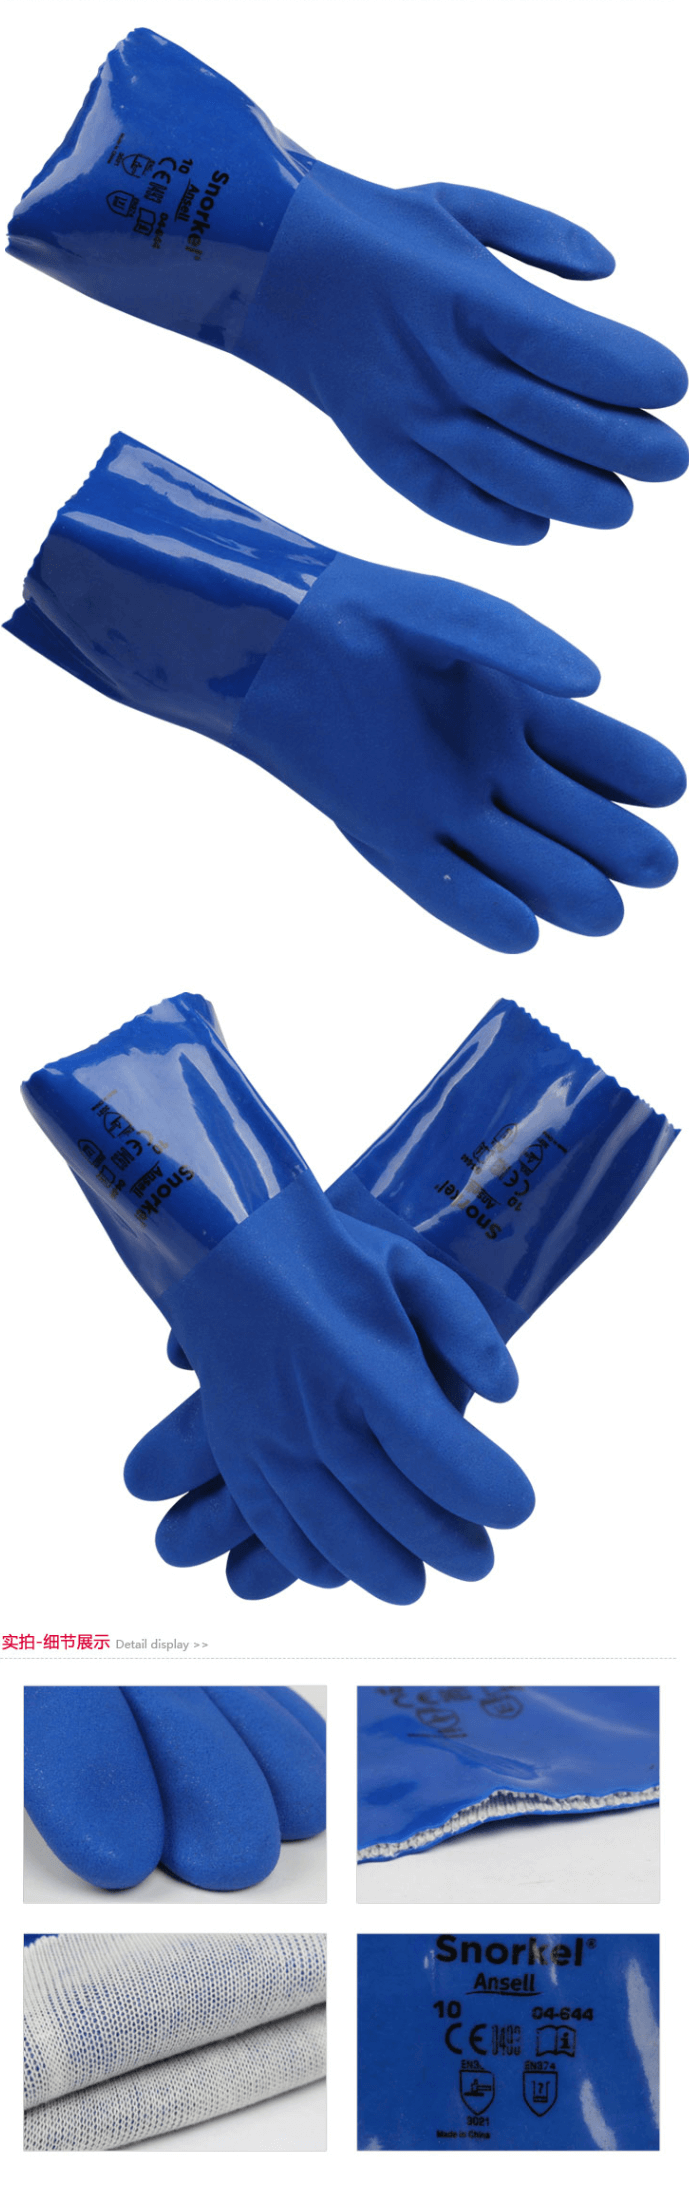 安思尔 4-644聚氯乙烯防化手套